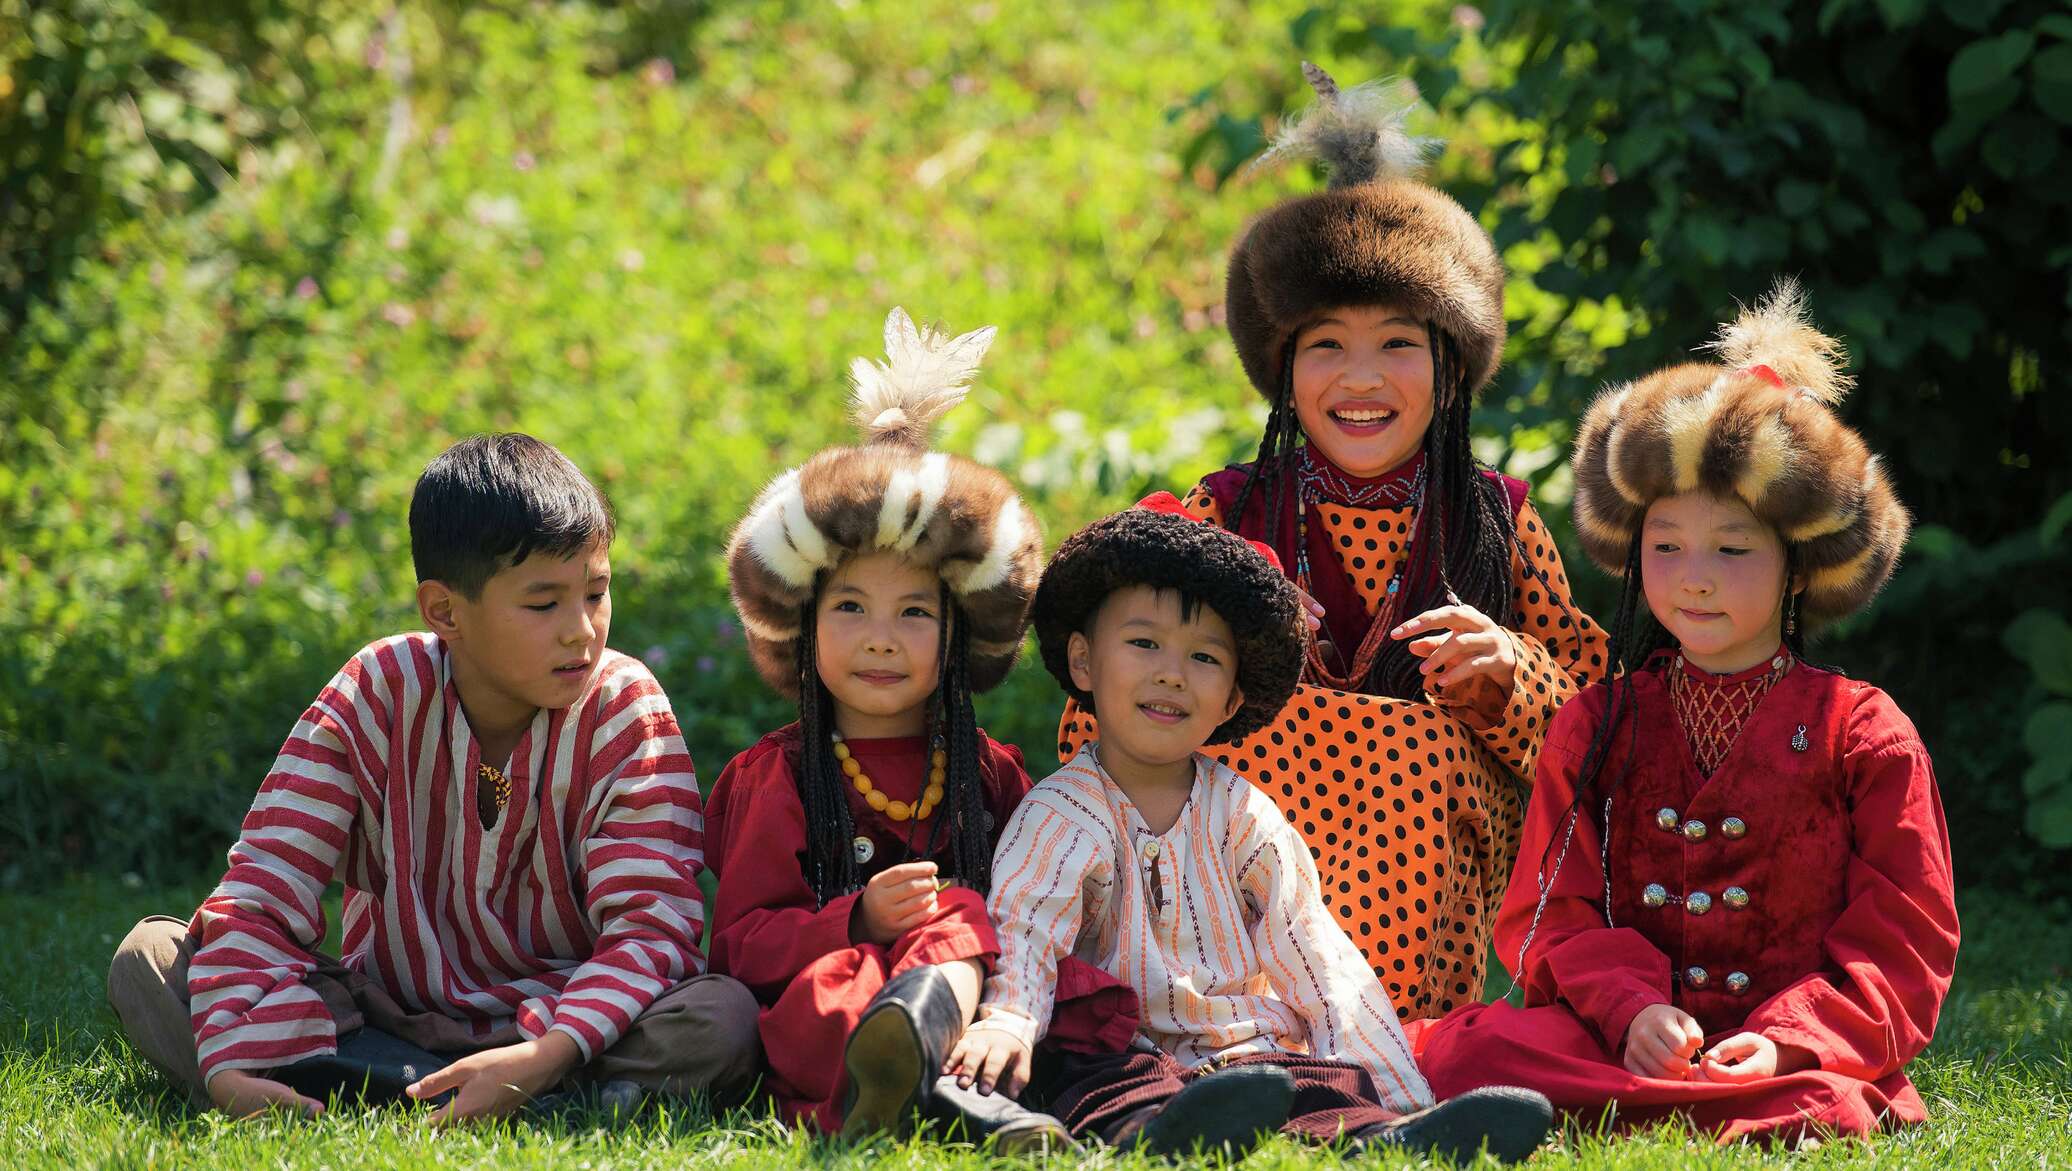 Национальность киргиз. Дети Кыргызстана в нац одежде. Дети в национальных костюмах. Кыргызская семья. Кыргызские национальные костюмы для детей.